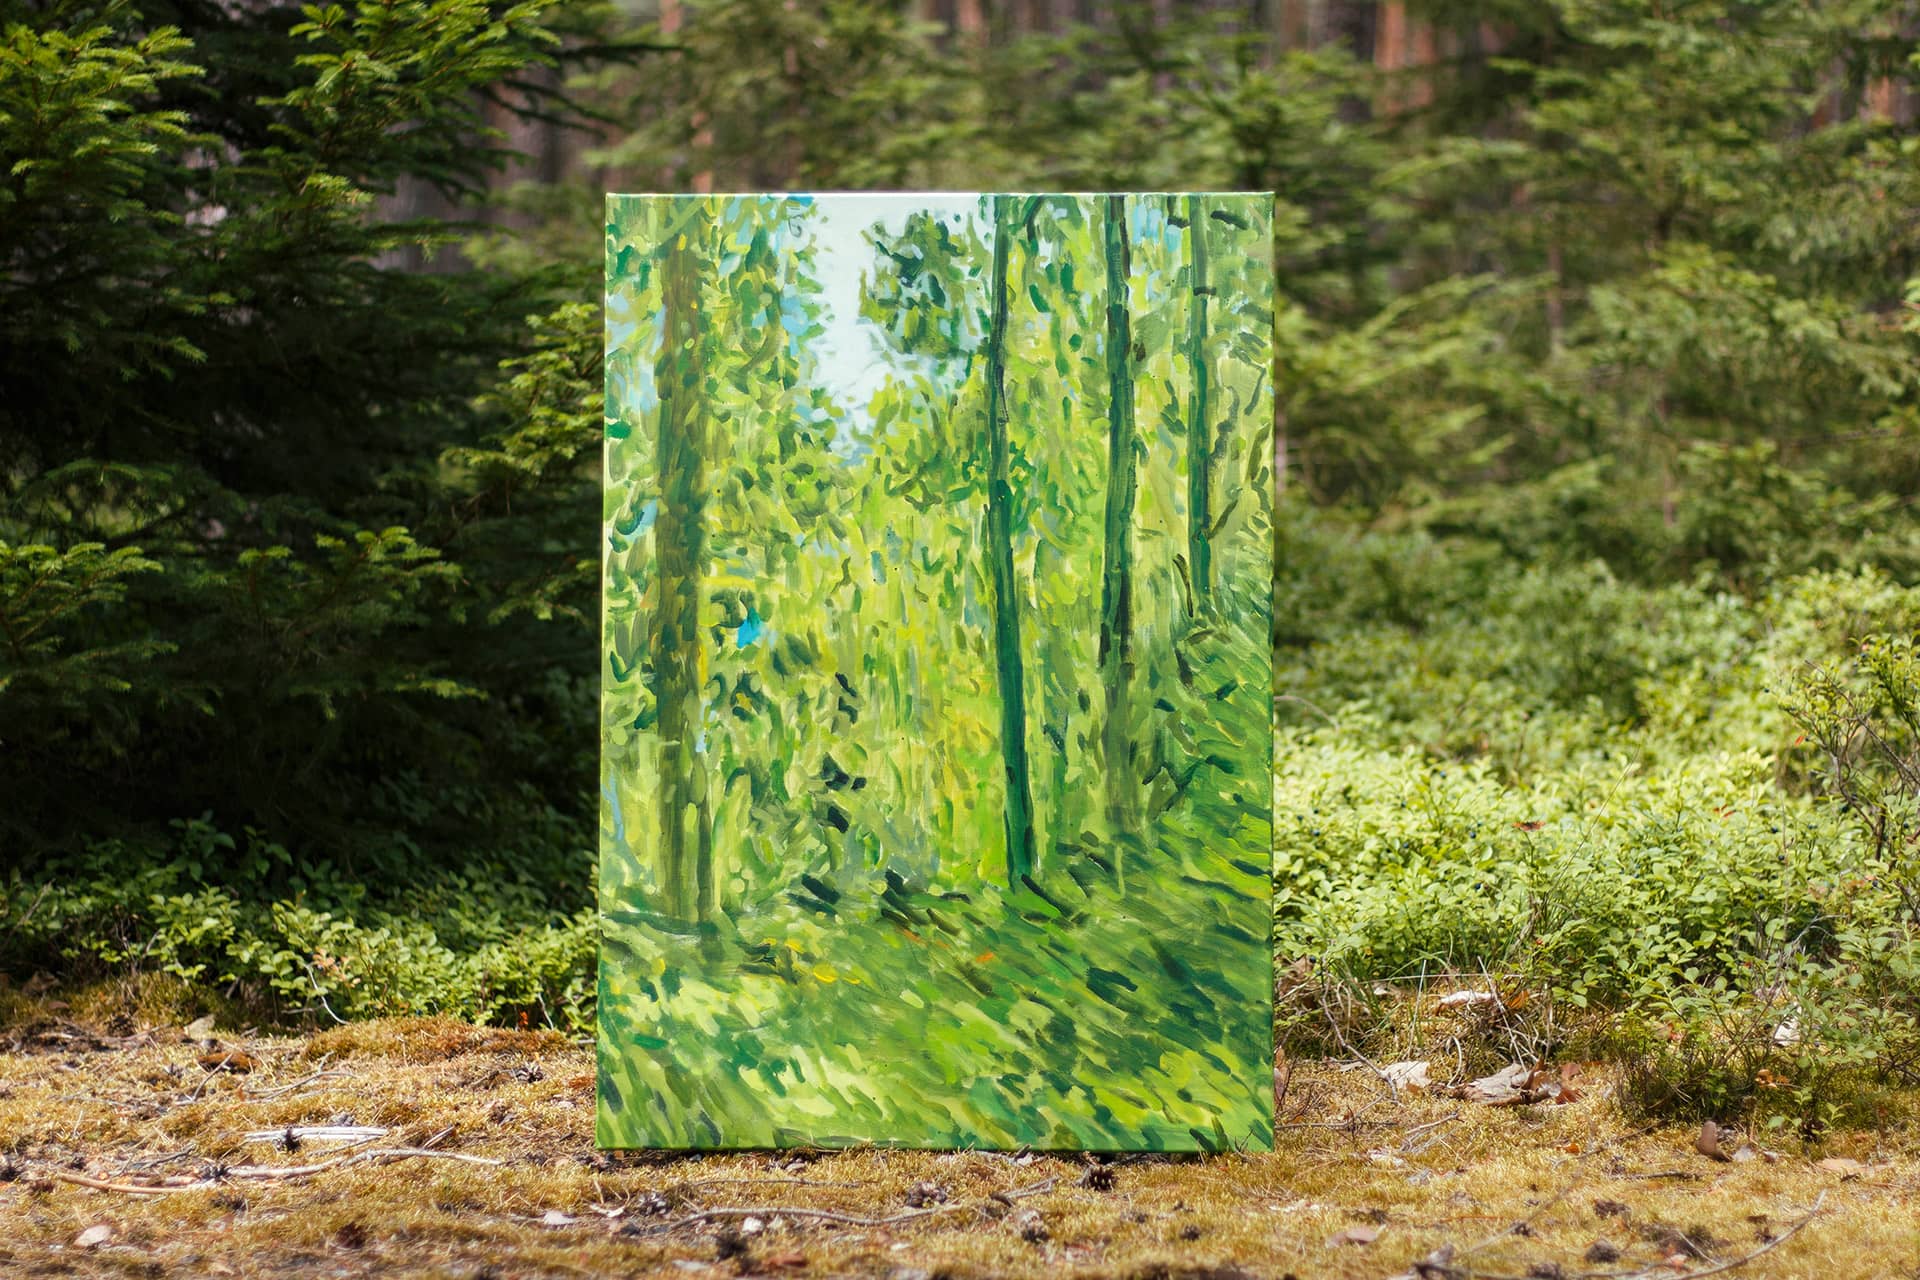 Grünes, impressionistisches Gemälde, fotografiert in einem Waldstück bei Nürnberg zwischen Heidelbeersträuchern und Nadelbäumen